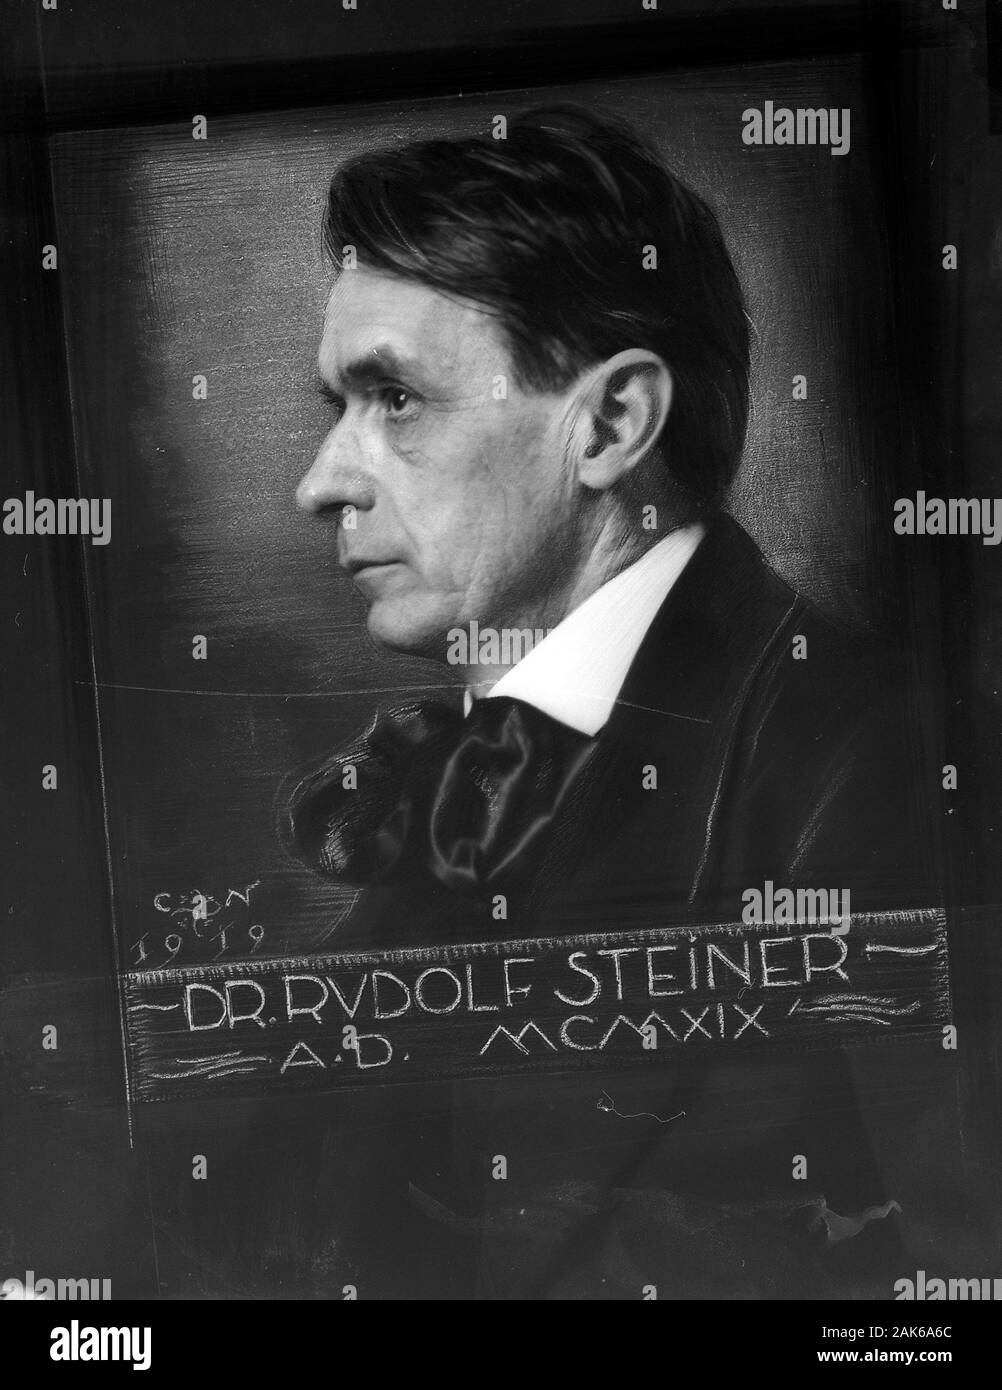 Rudolf Steiner (Lorenz Joseph (27 ou 25) Février 1861 - 30 mars 1925) est un philosophe et écrivain autrichien, réformateur social, architecte, économiste, esotericist, et réclamé voyant. Banque D'Images